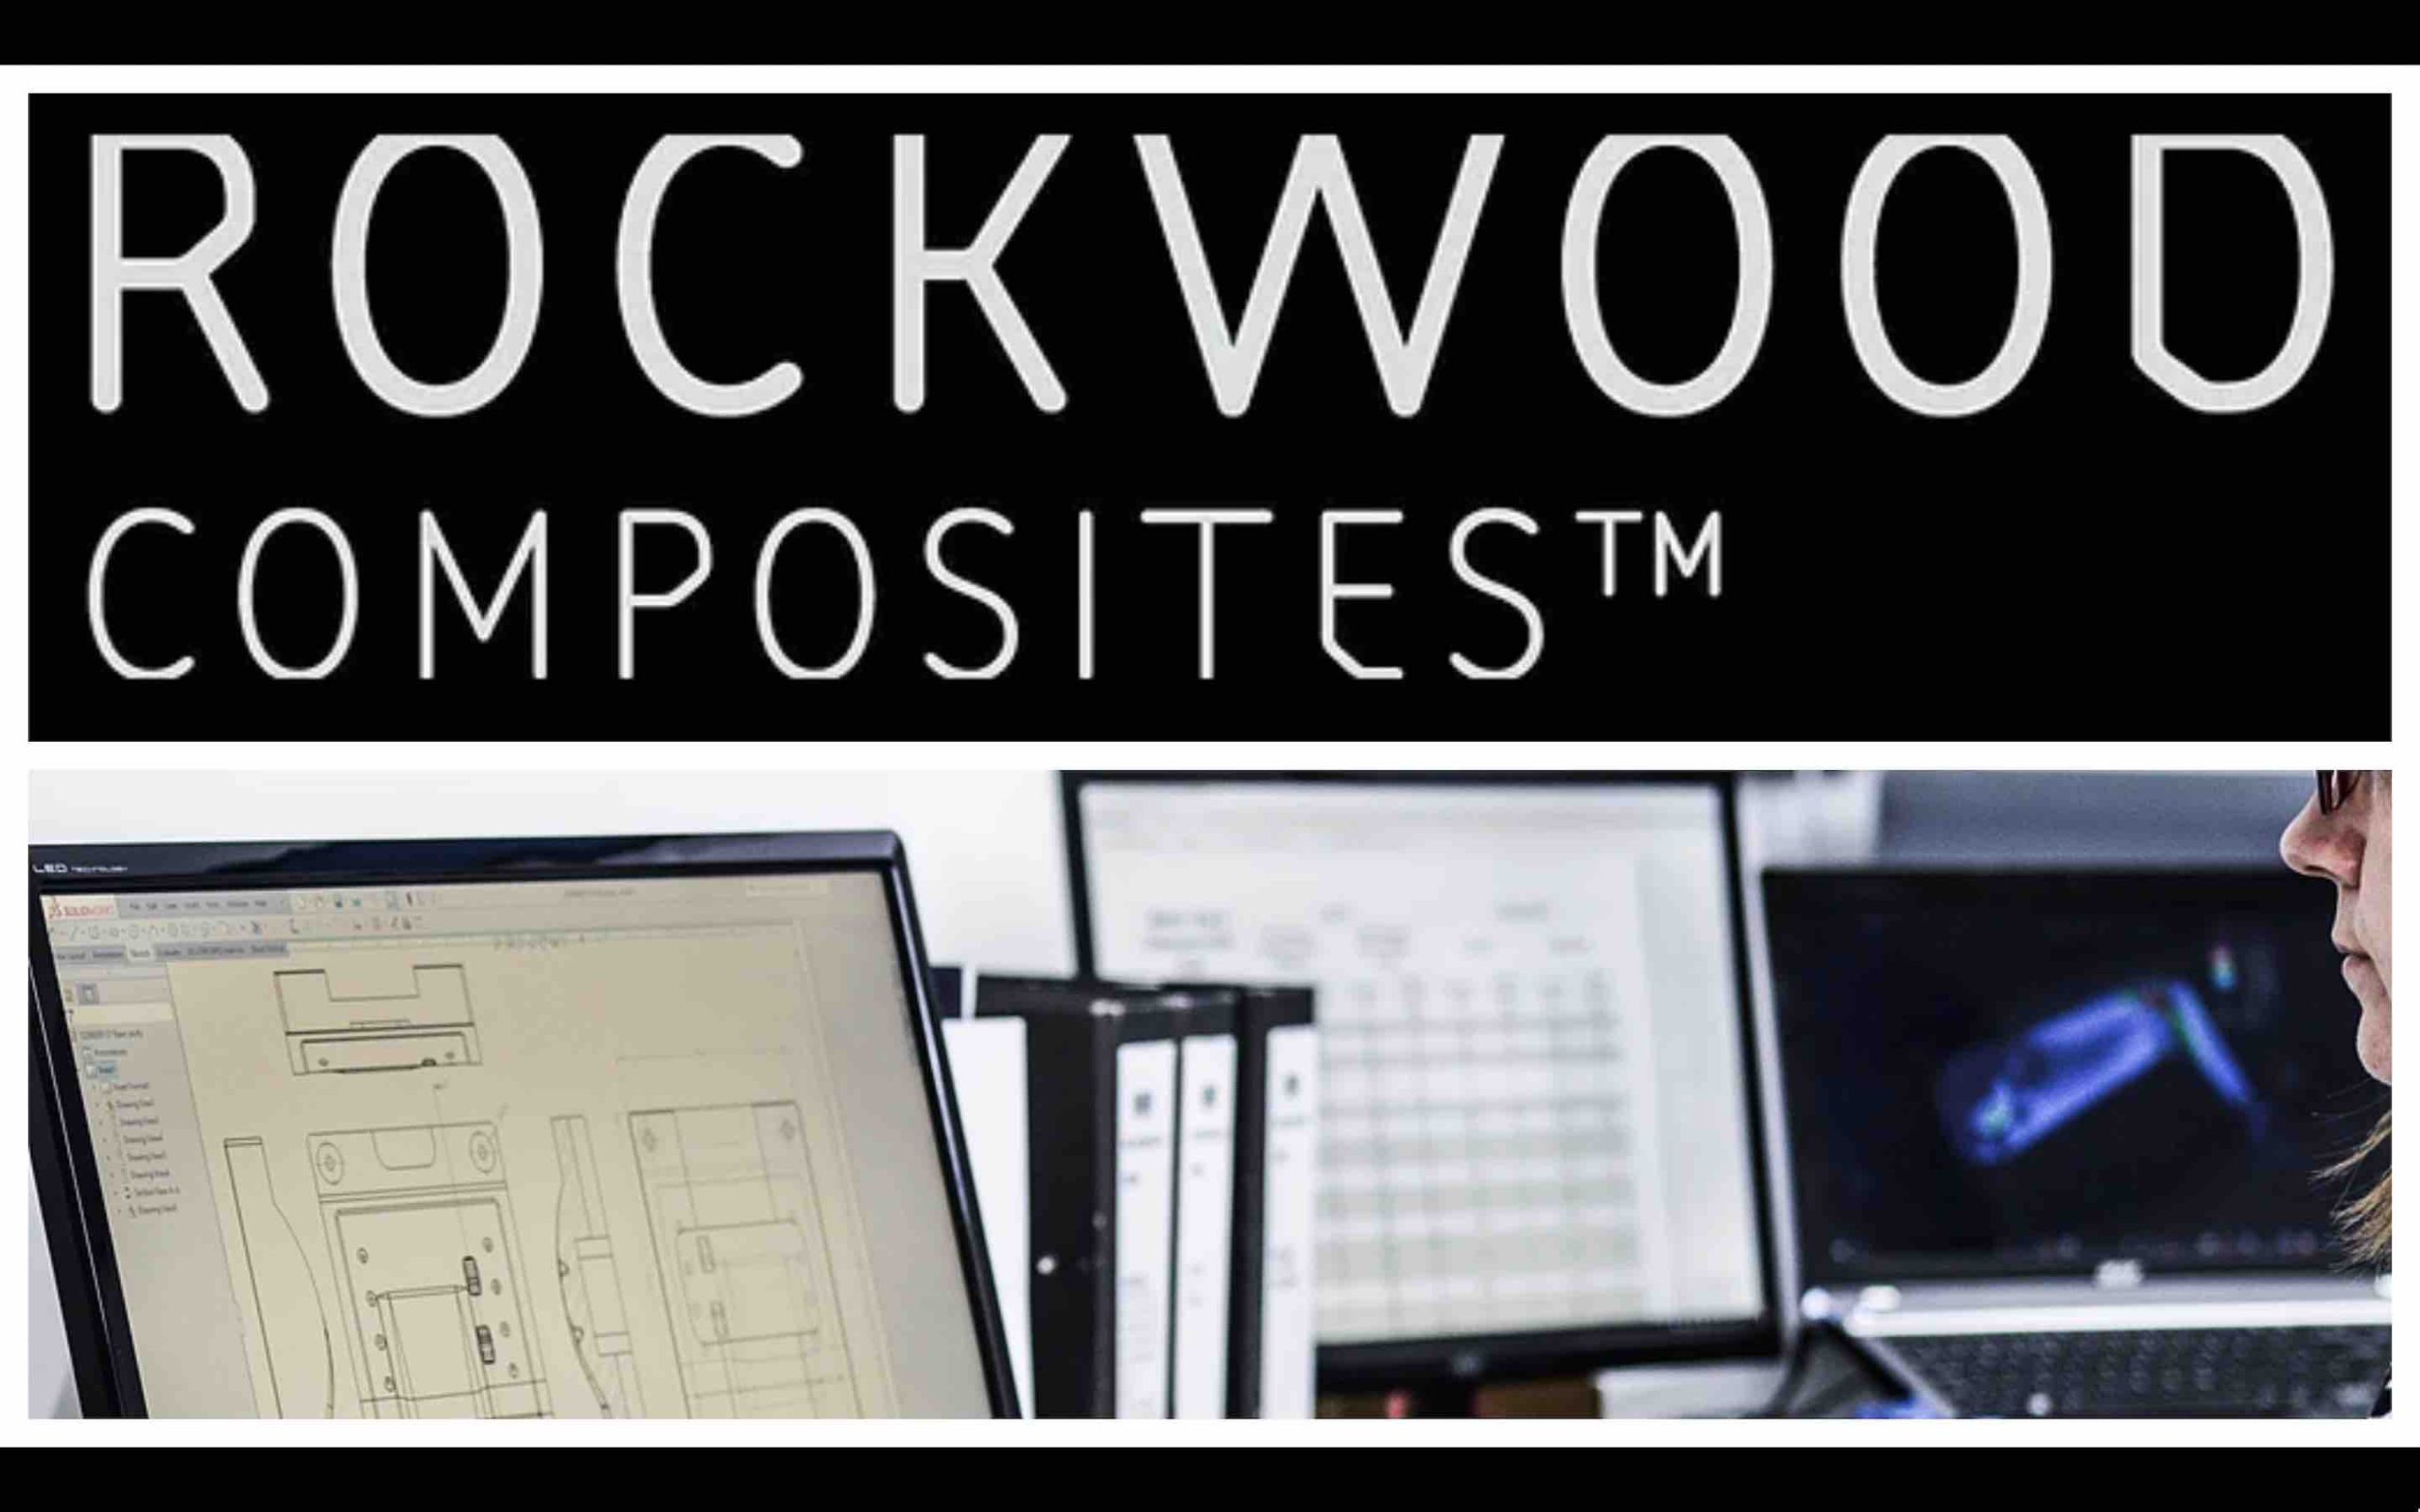 Rockwood Composites Maroc Morocco